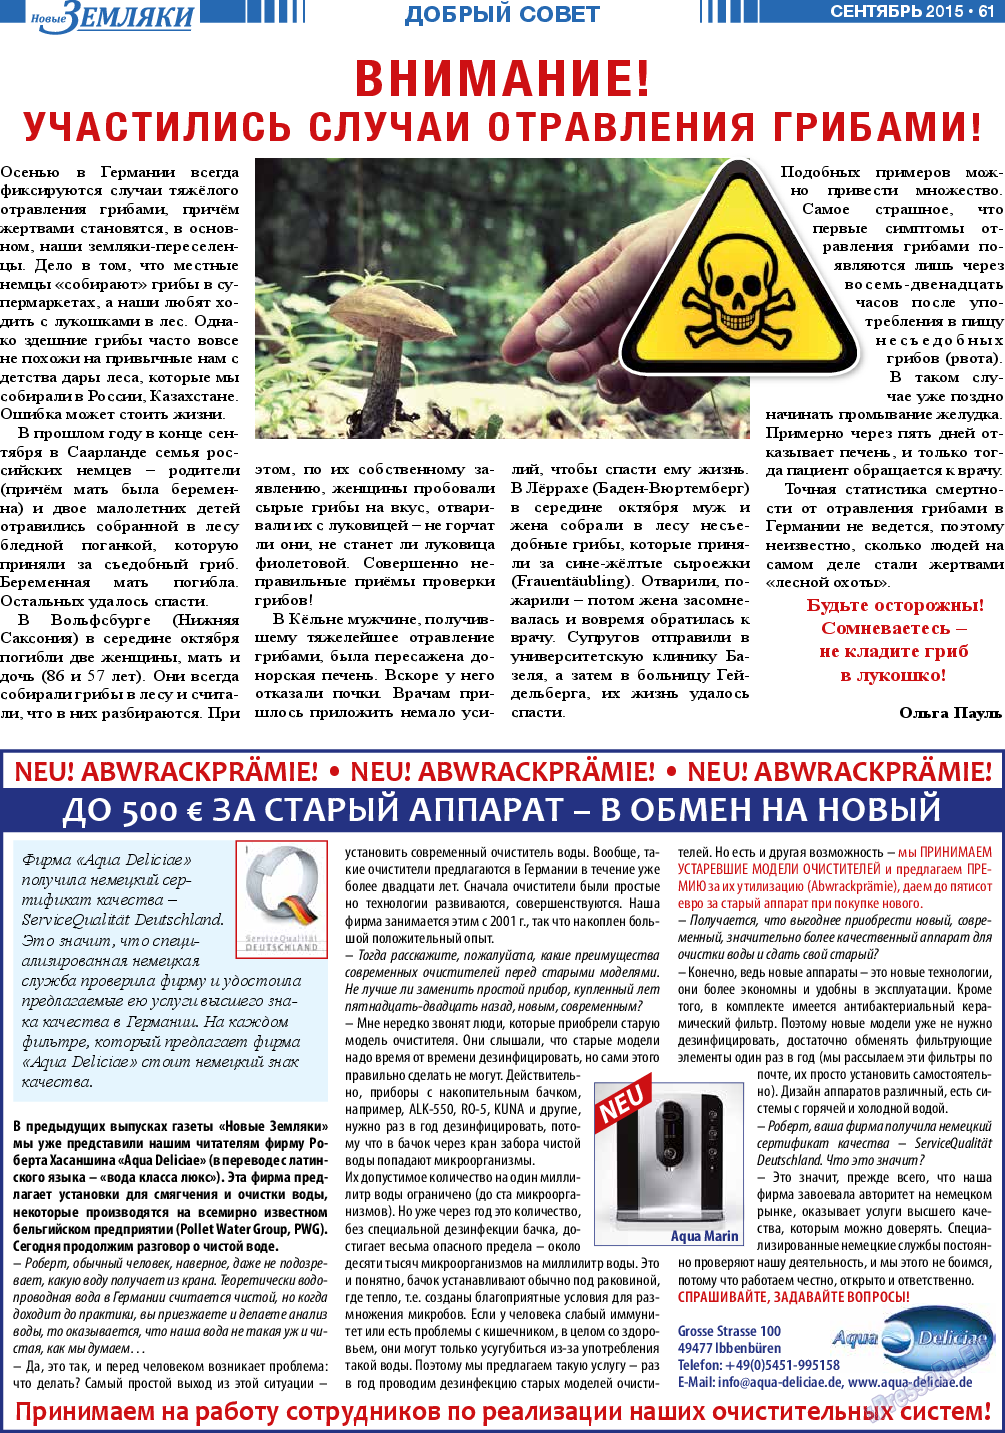 Новые Земляки, газета. 2015 №9 стр.61